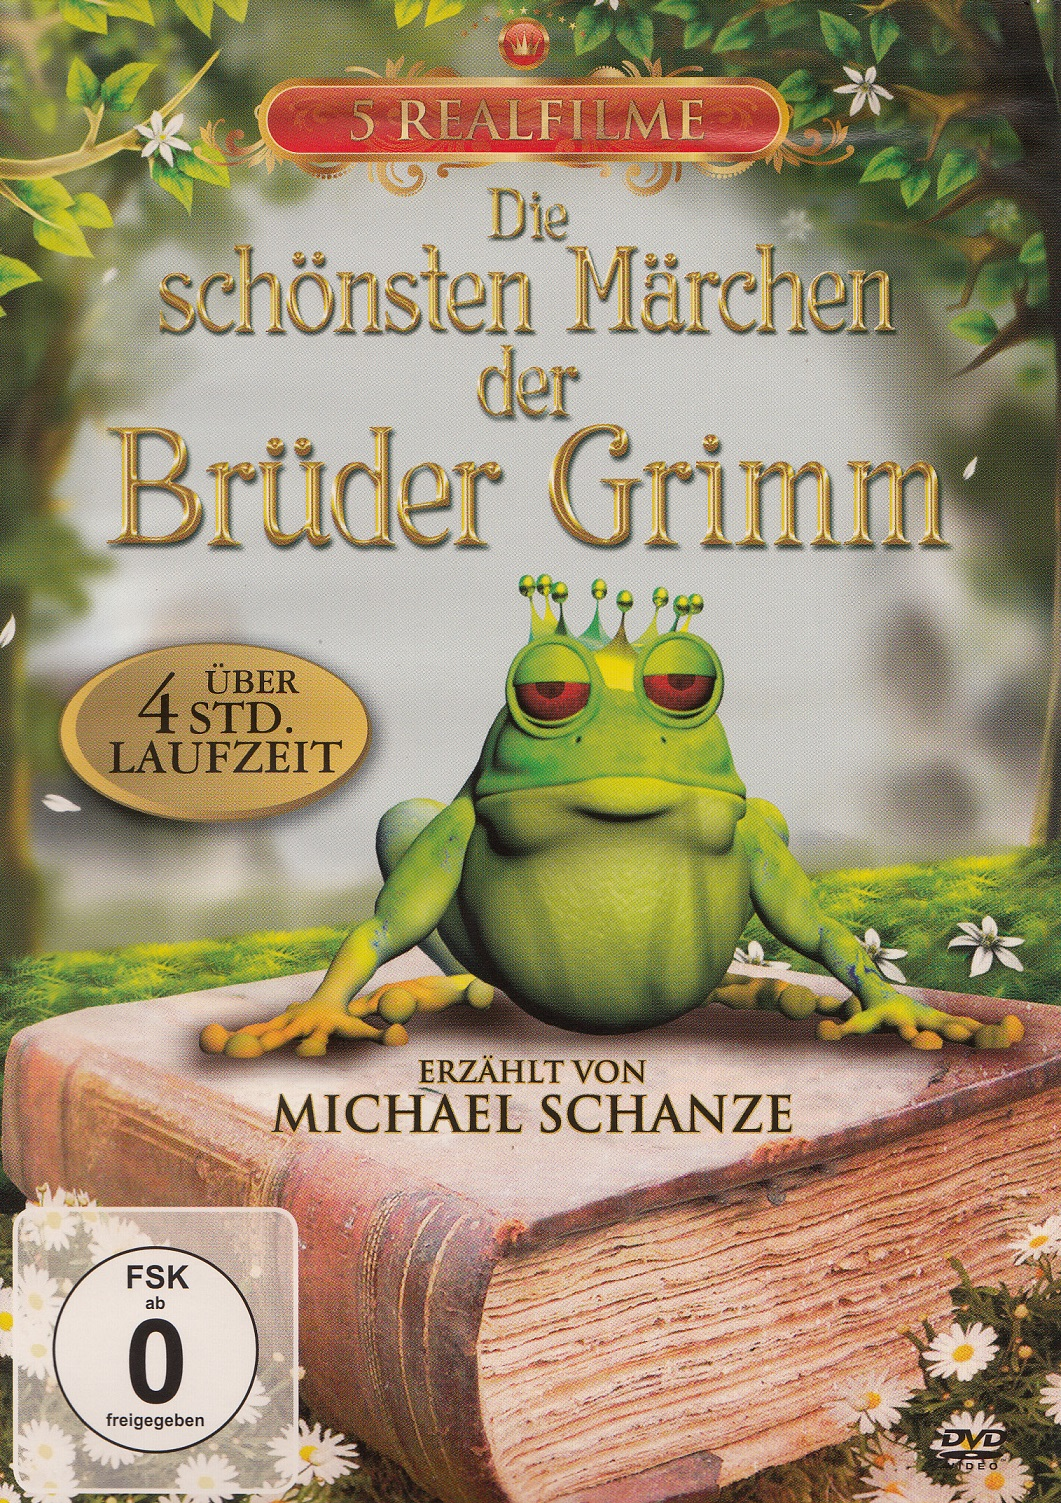 Brüder Märchen schönsten Die Grimm der DVD